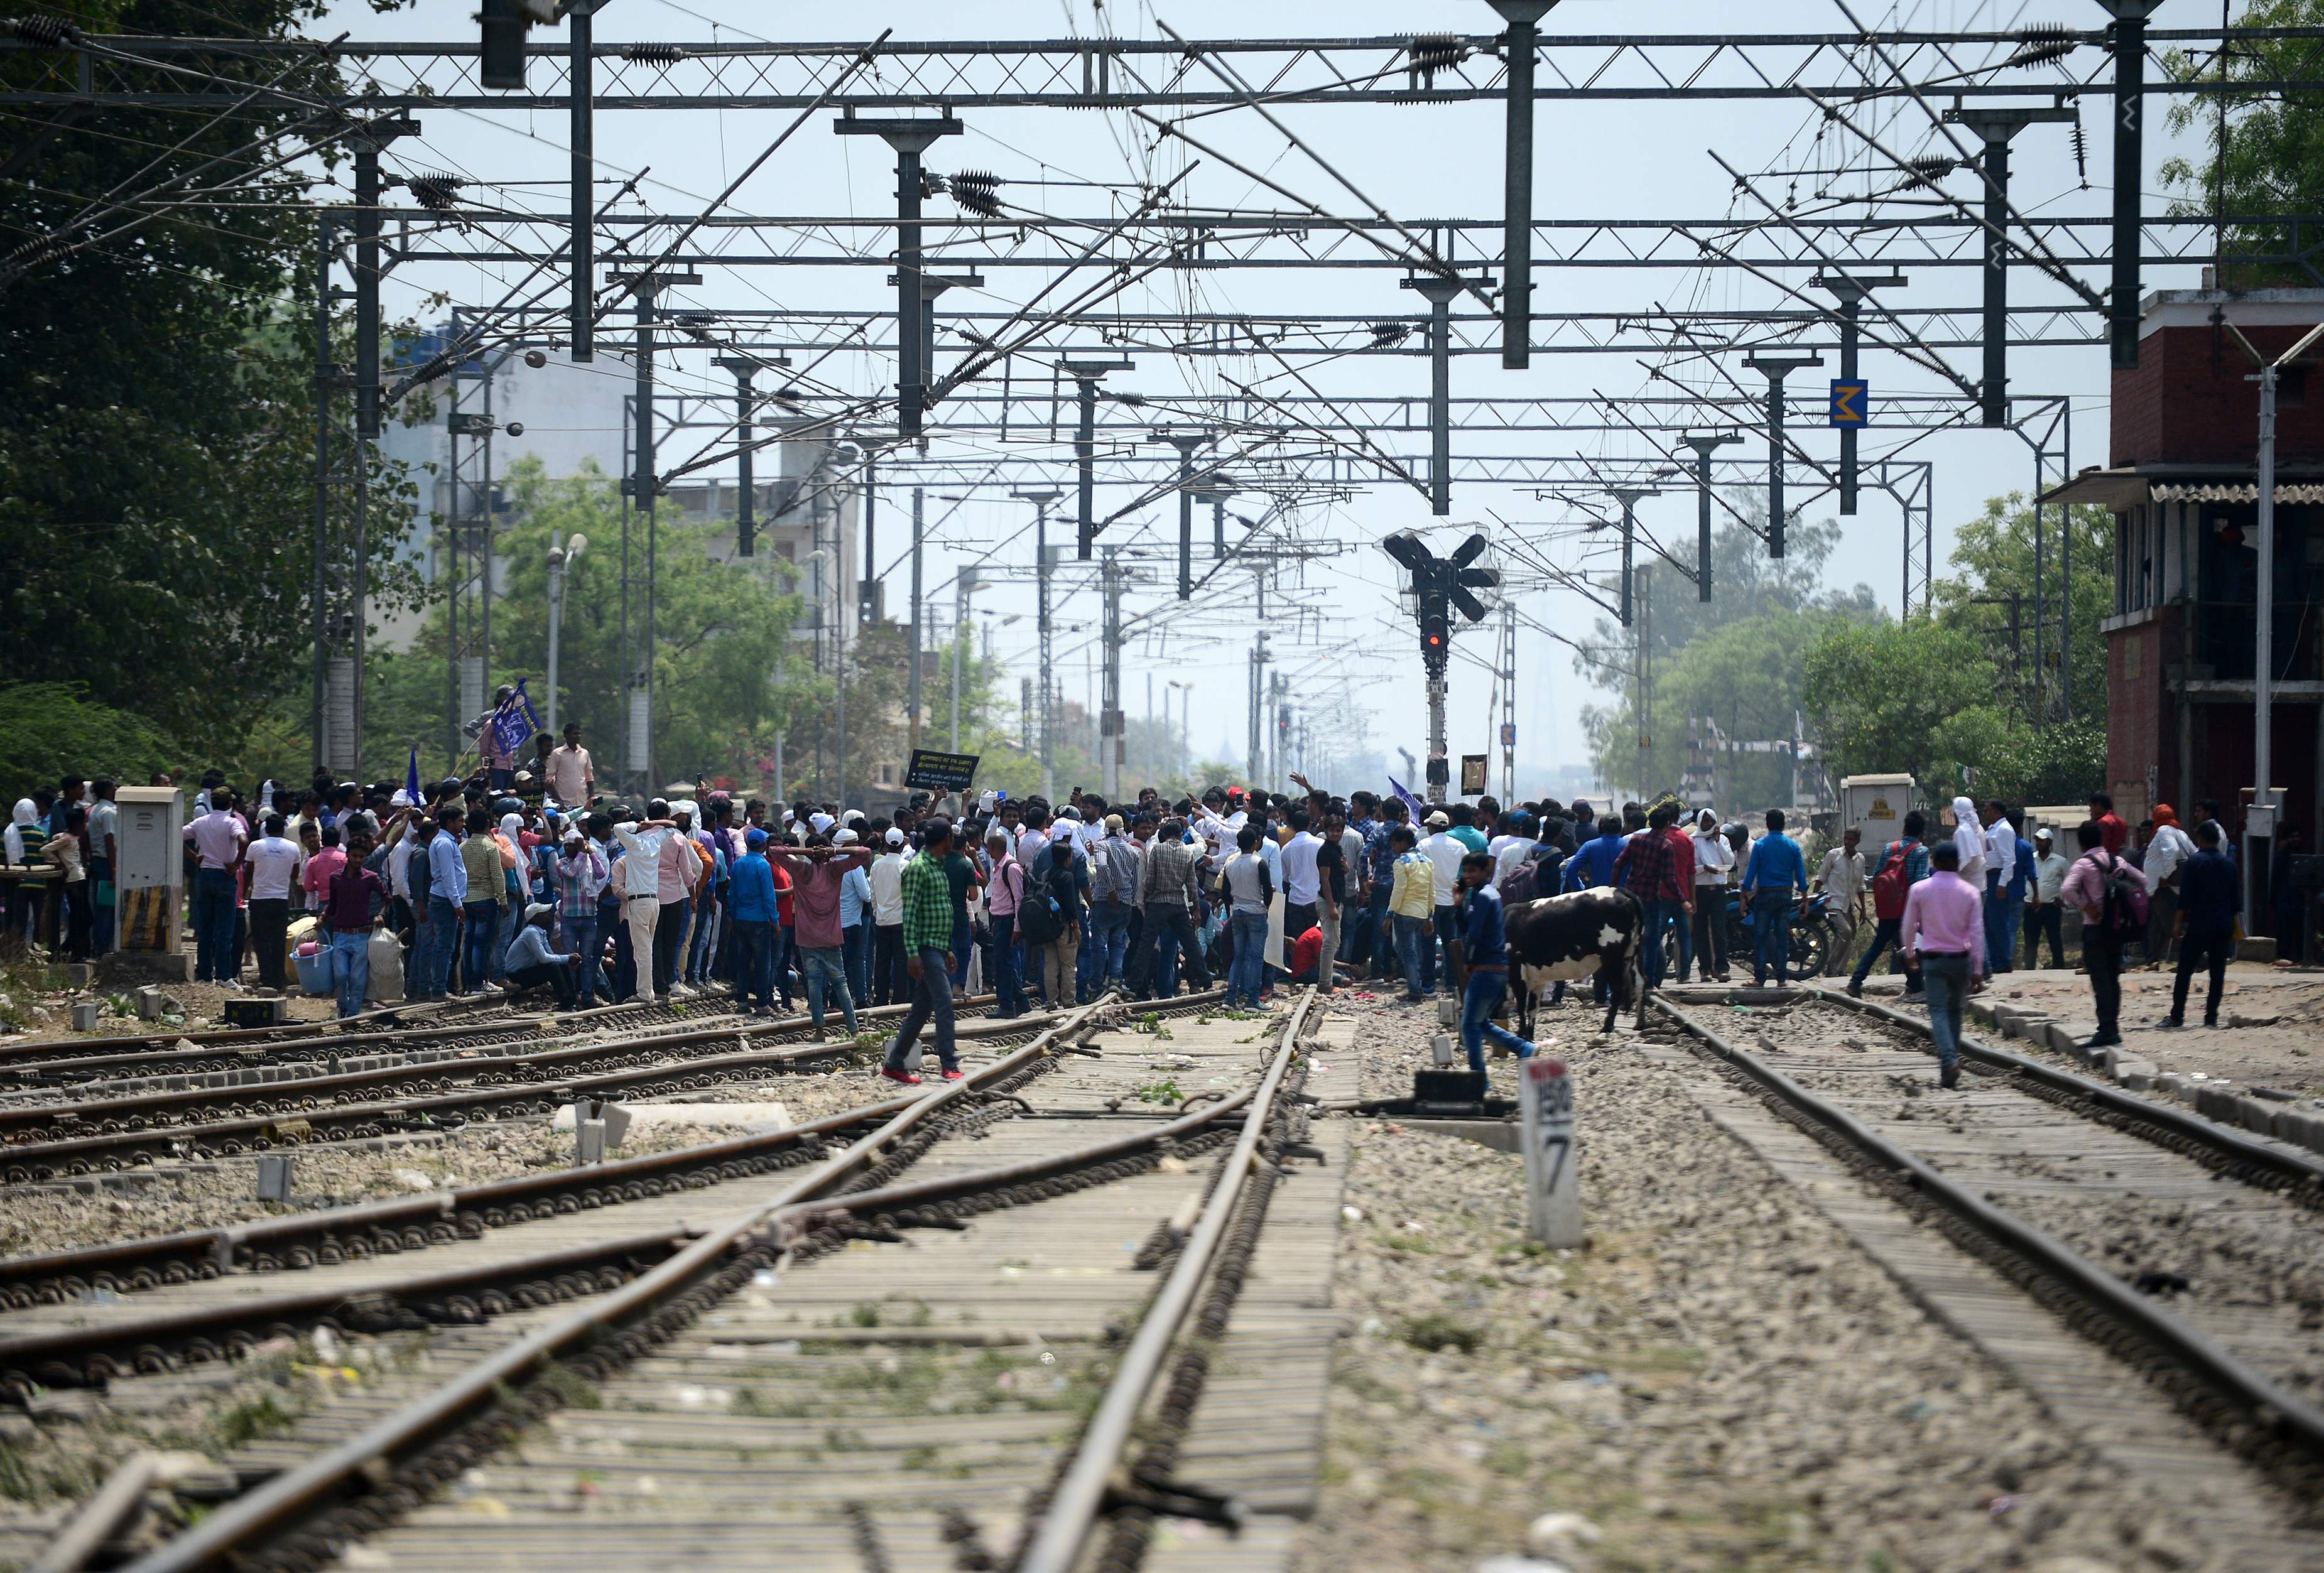 قطع خطوط السكك الحديدية فى الهند